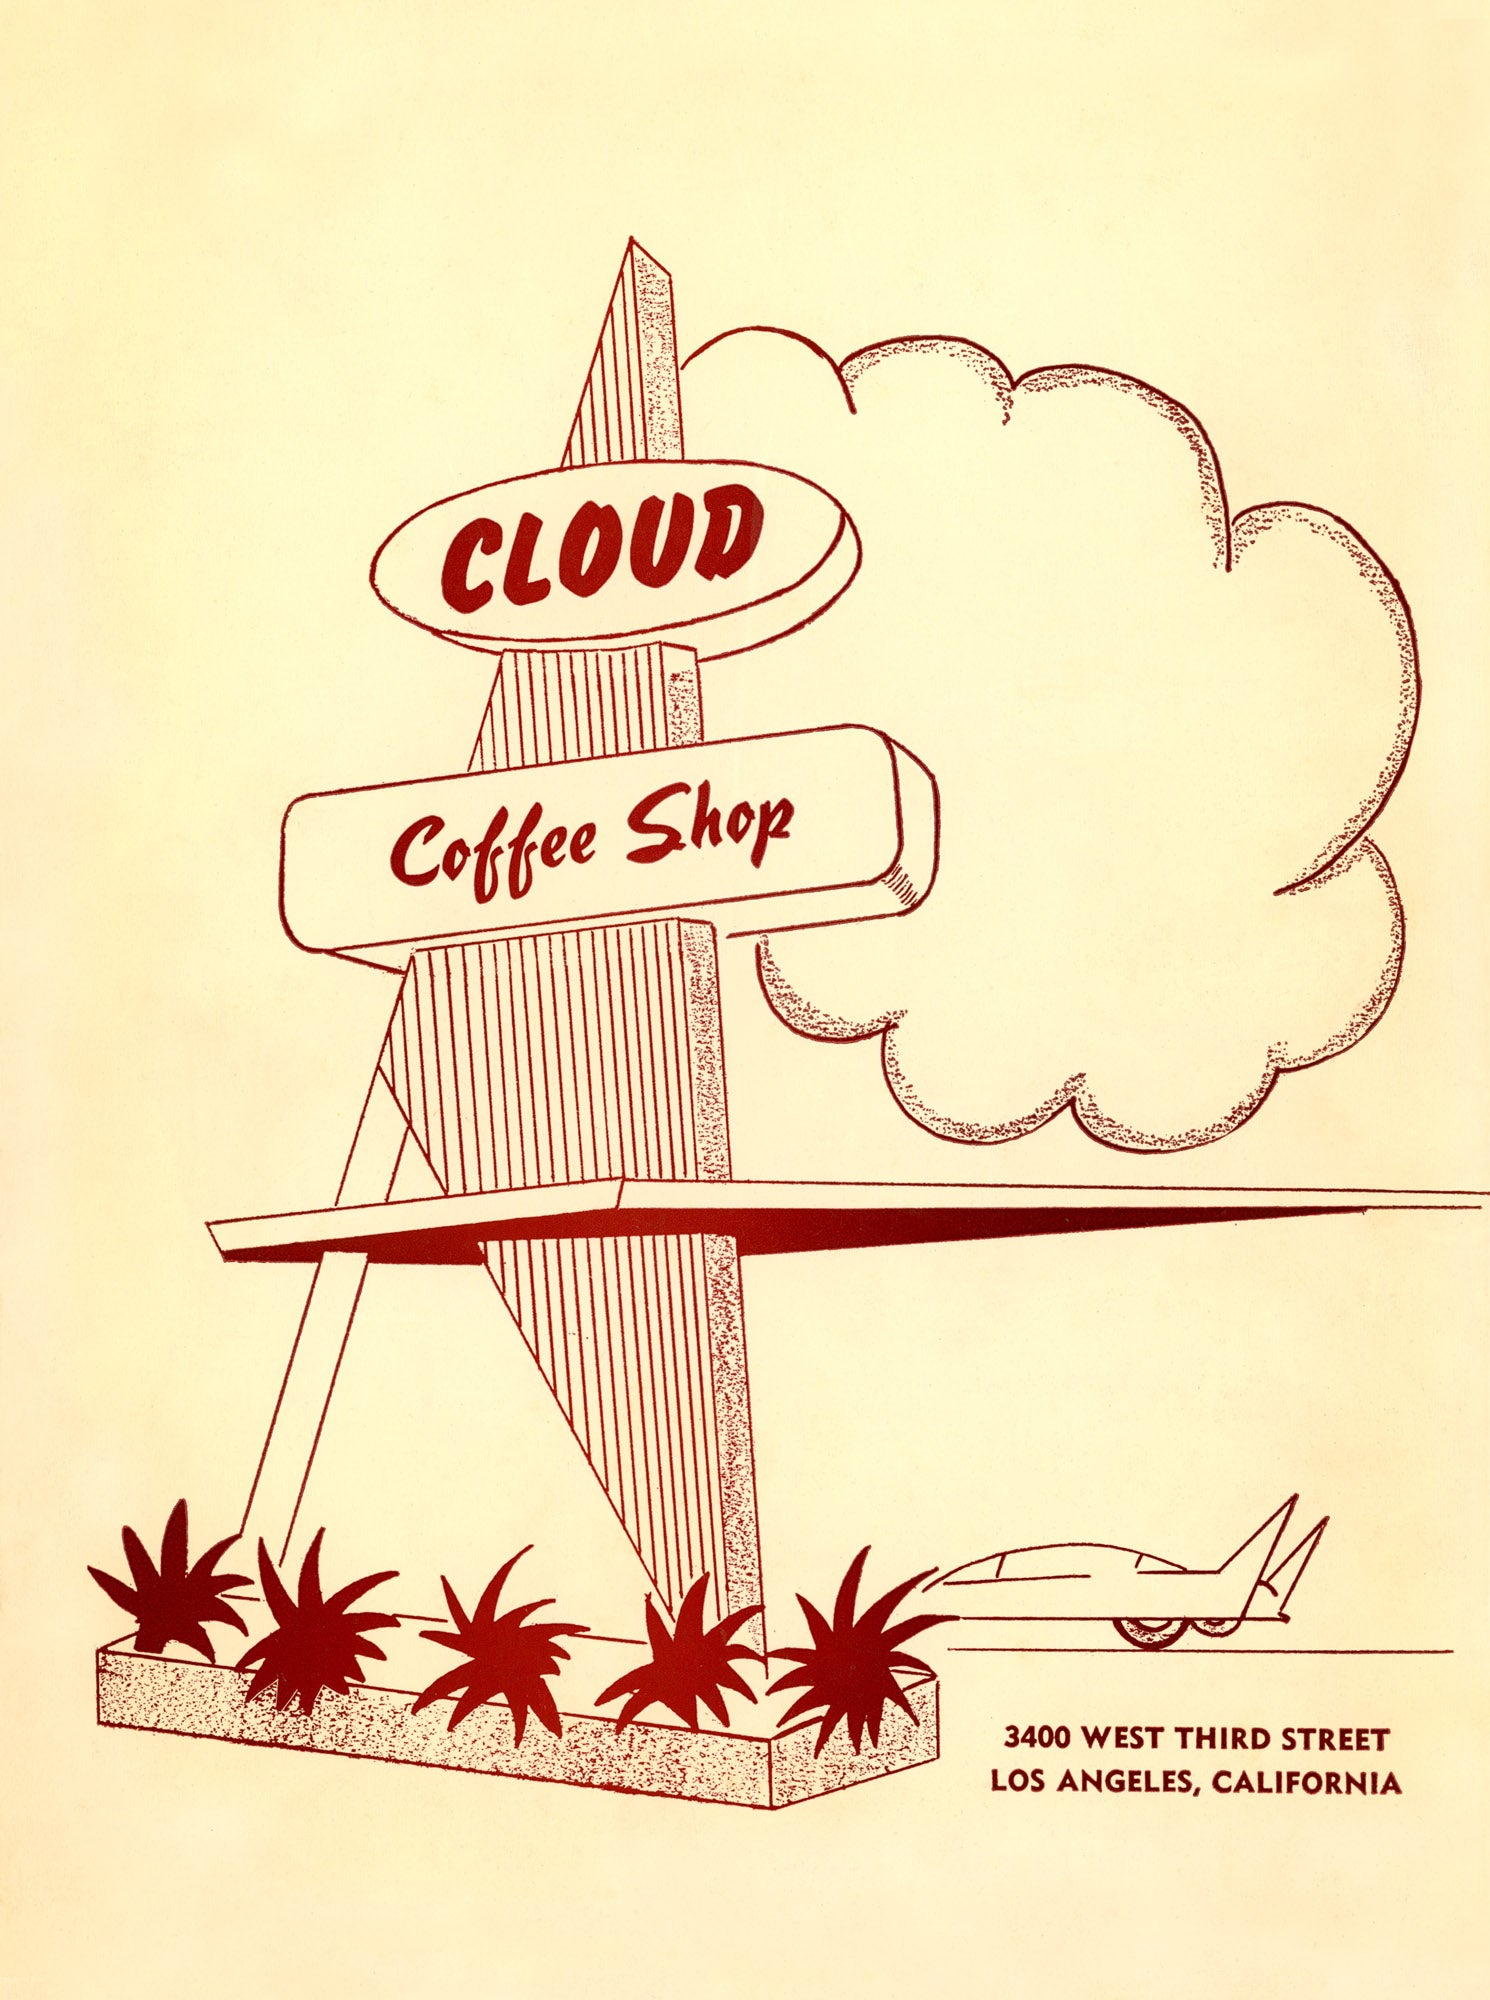 Cloud Coffee Shop, Los Angeles 1950s Menu Design